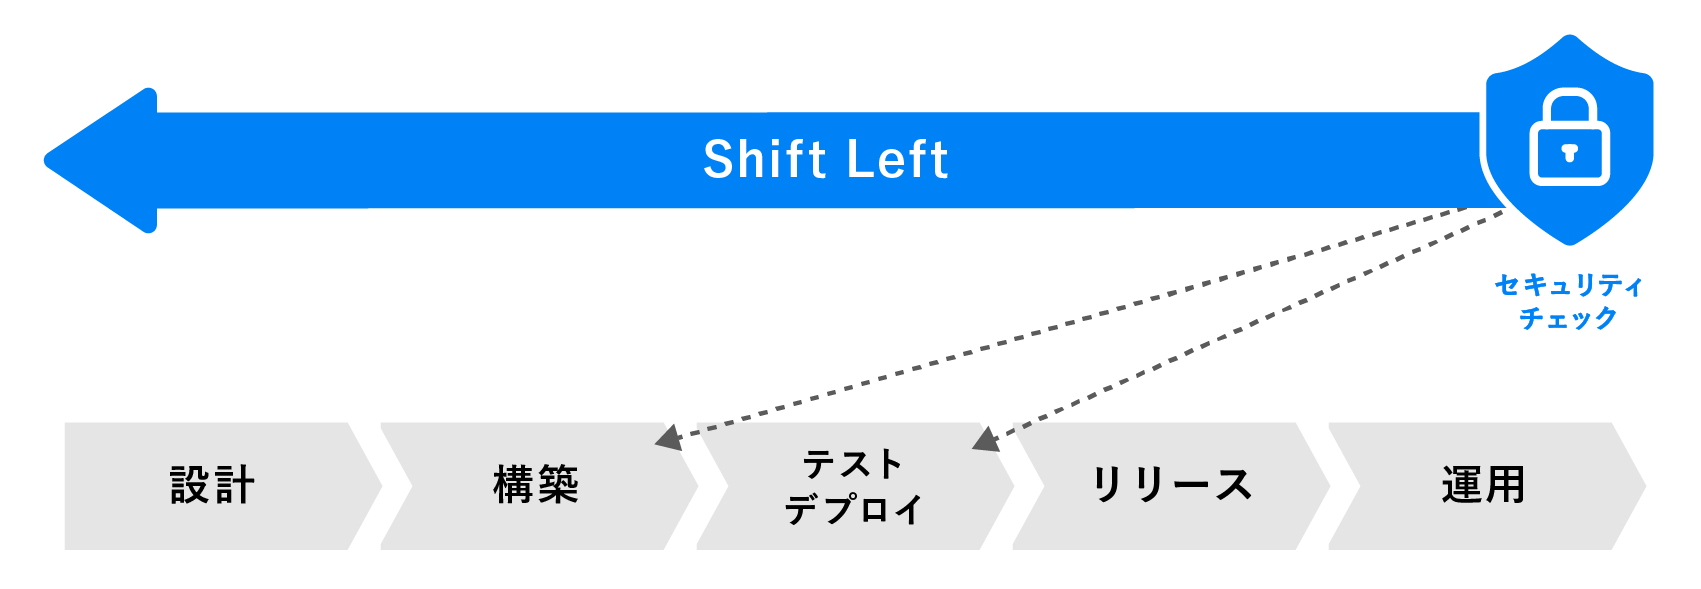 シフトレフト（Shift Left）とは、デプロイ前の各プロセスにセキュリティの要件・工程を組み入れていくことを指します。